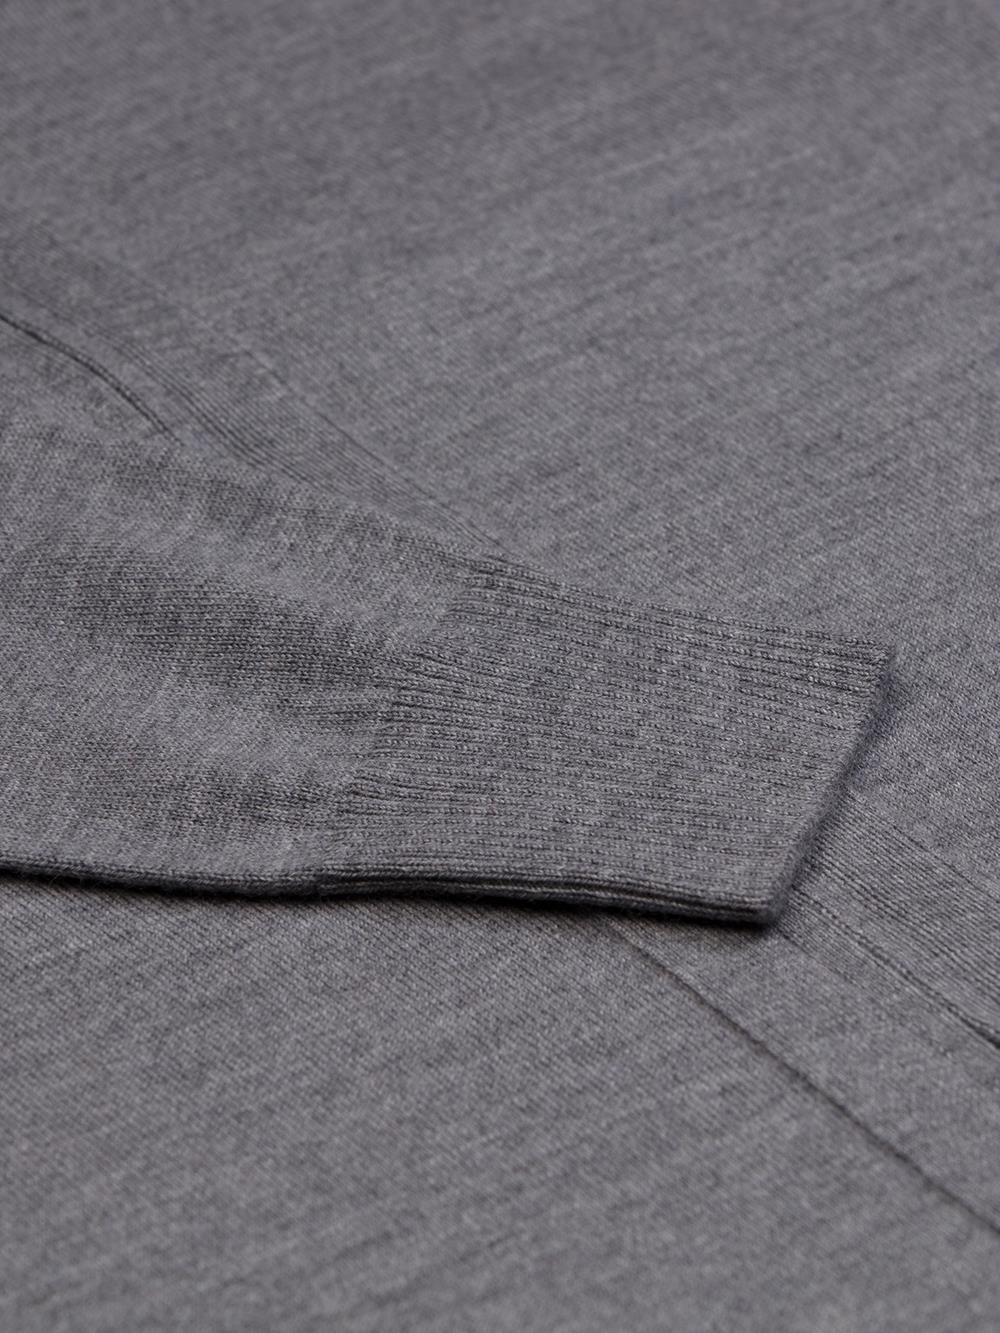 Bady Strickjacke mit Reißverschluss aus grauer Merinowolle